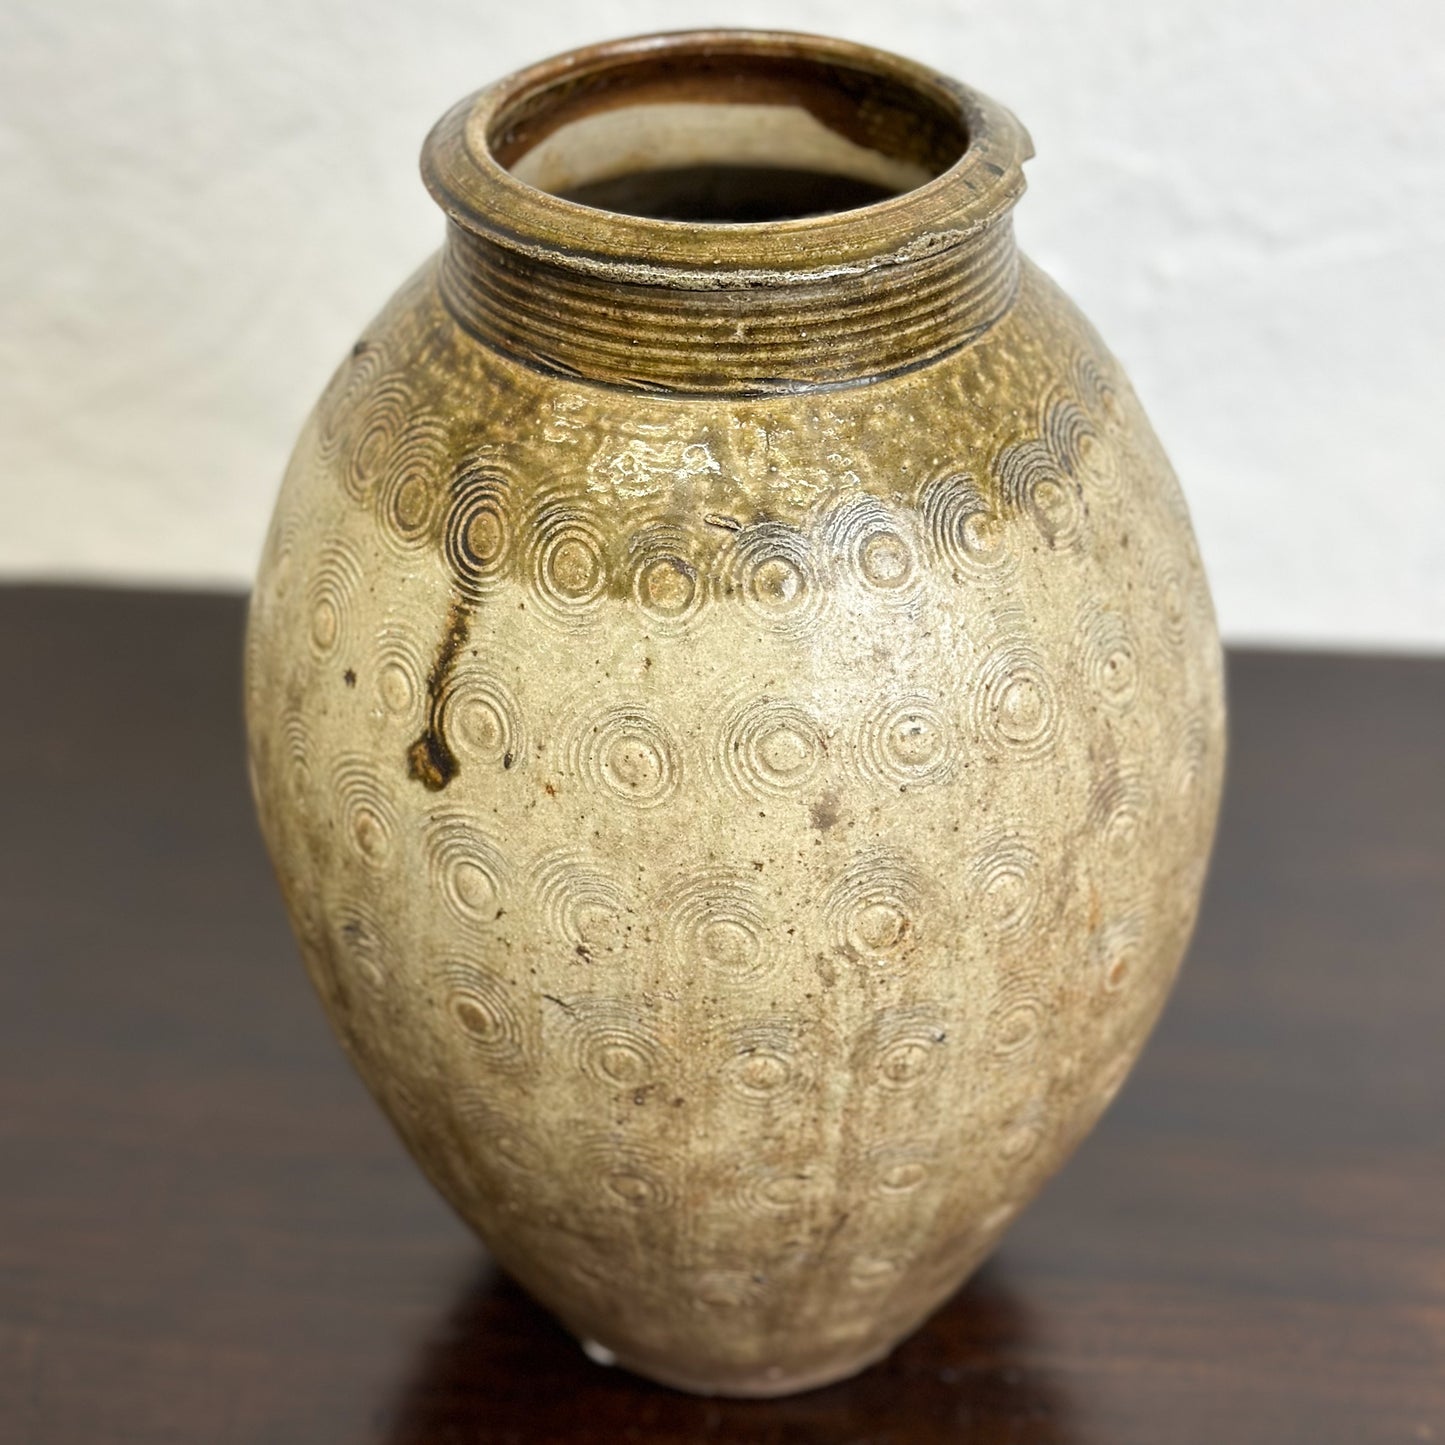 Vintage Pot with Spiral Motif